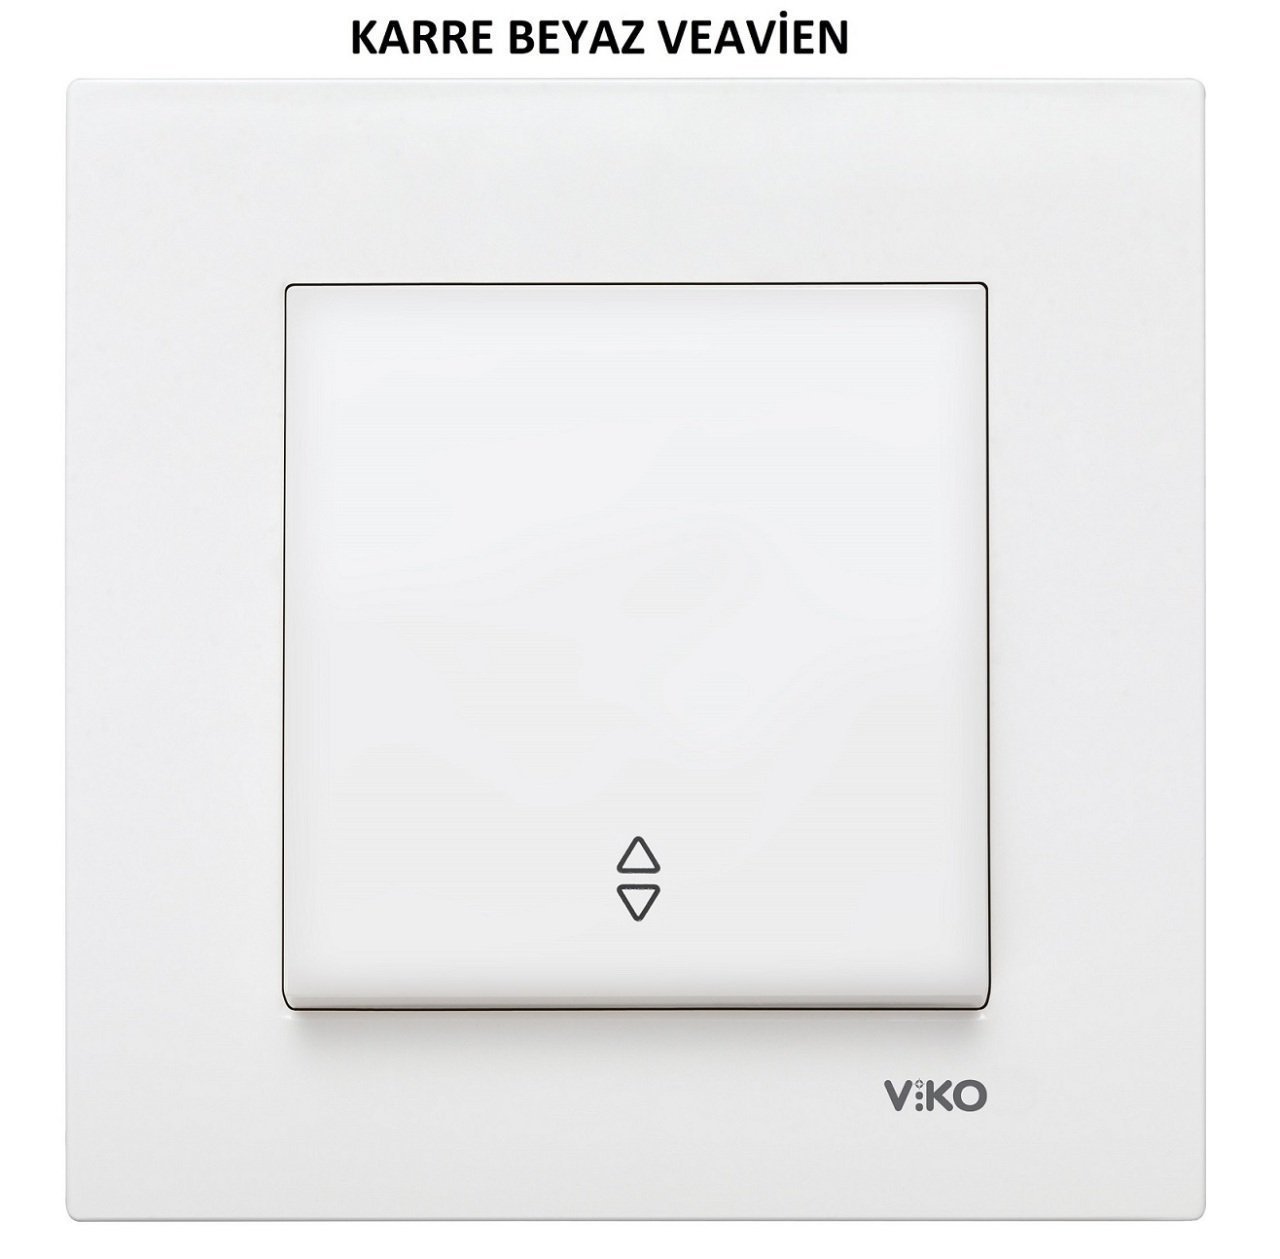 Viko Karre/Meridian Beyaz/Krem Vavien Veavien Anahtarı